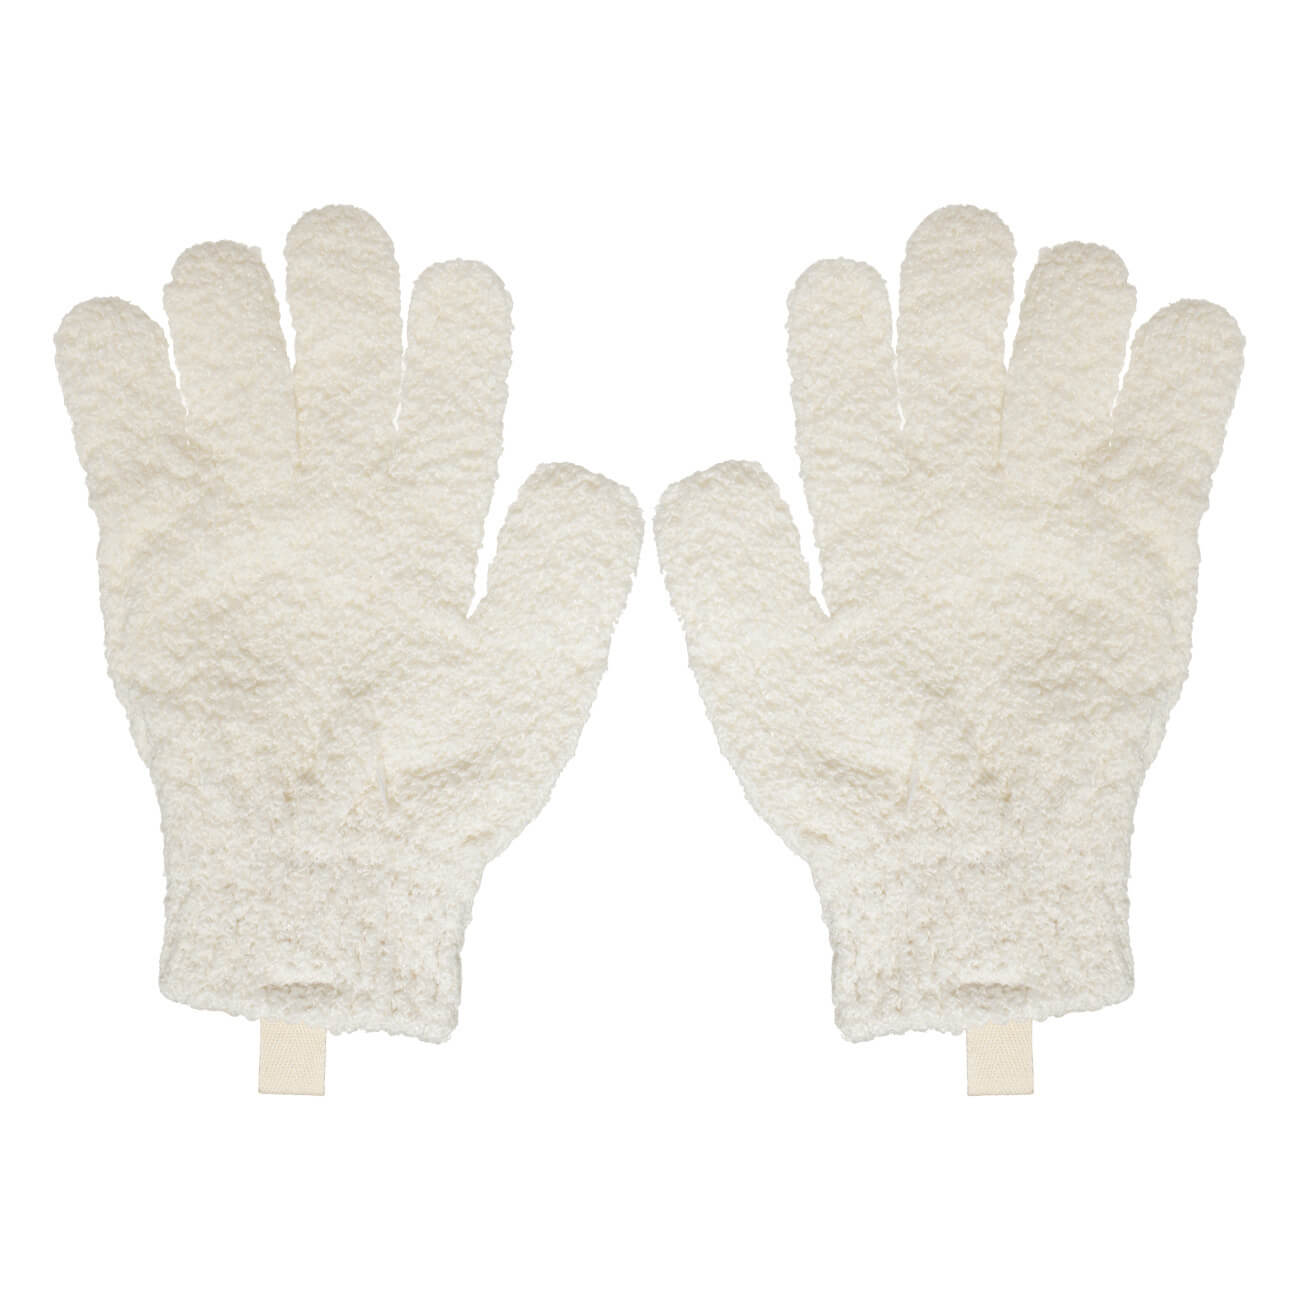 Перчатка для мытья тела, 21 см, 2 шт, отшелушивающая, полиэстер, молочная, Unique spa хайлайтер для тела с эффектом сияния 200мл